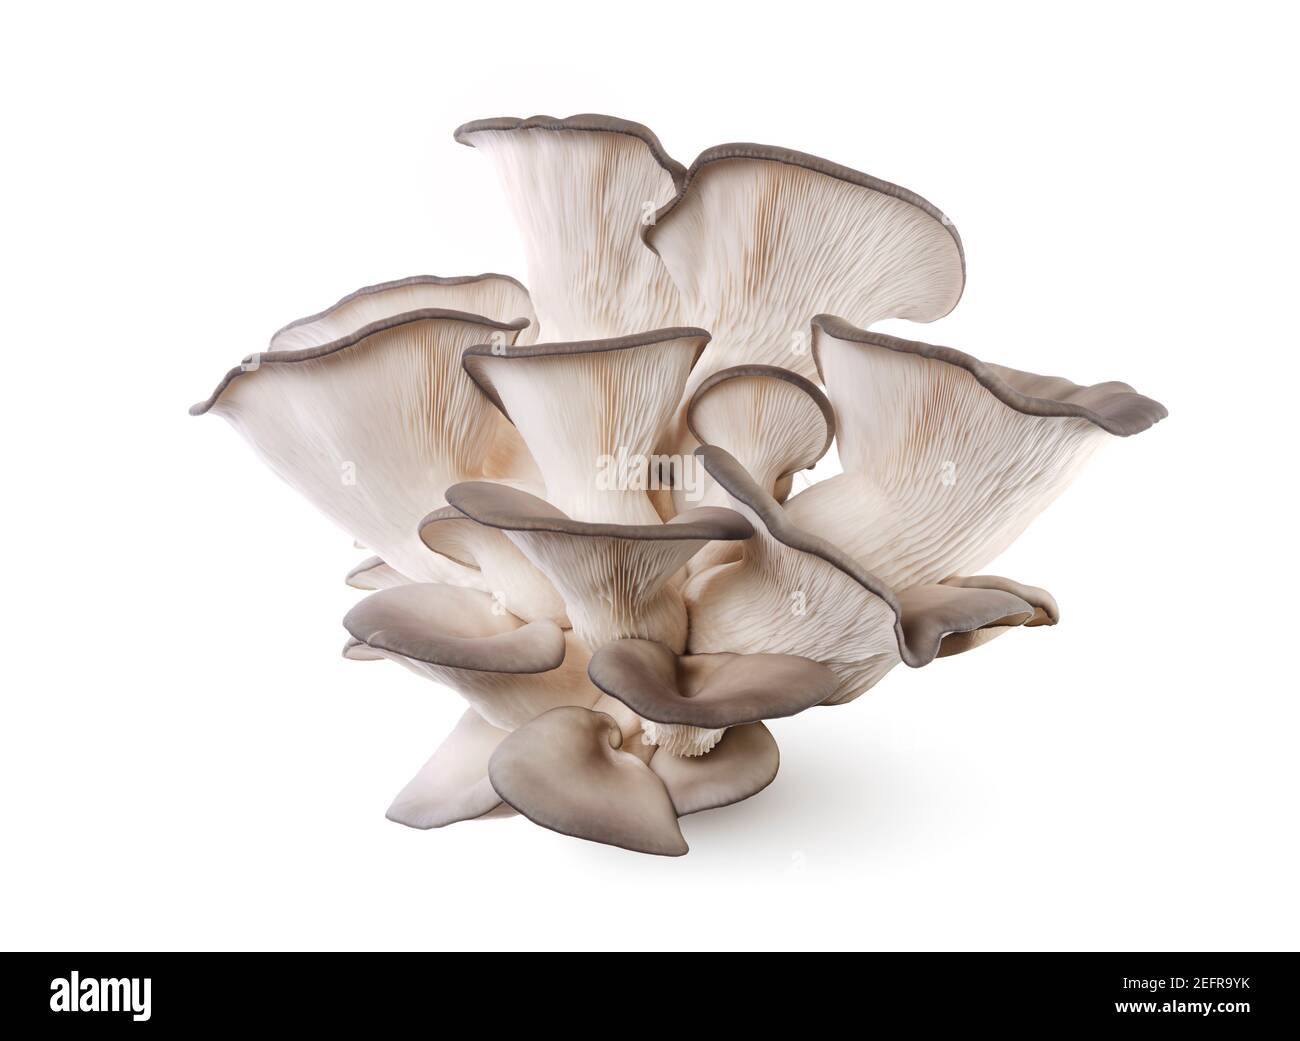 Champignons King Oyster, Pleurotus eryngii, également connu sous le nom de champignons King Trumpet ou de champignons French Horn, isolés sur fond blanc de studio. Banque D'Images